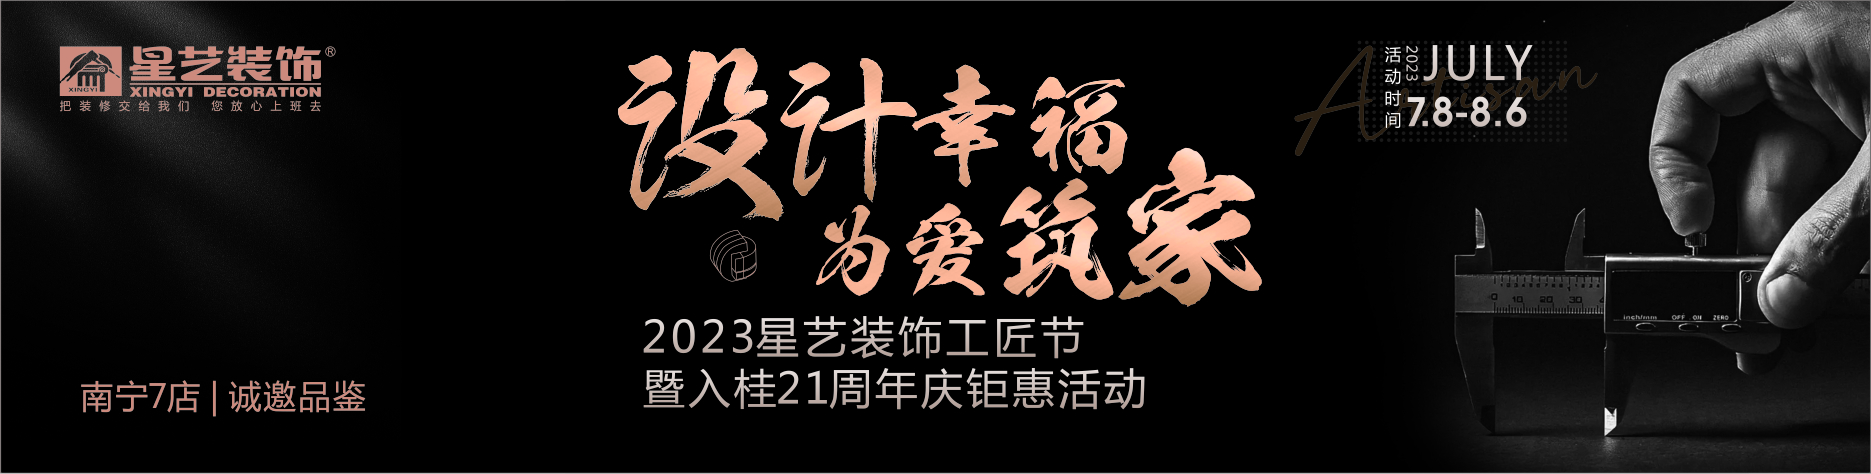 2023星艺装饰工匠节 暨入桂21周年庆钜惠活动